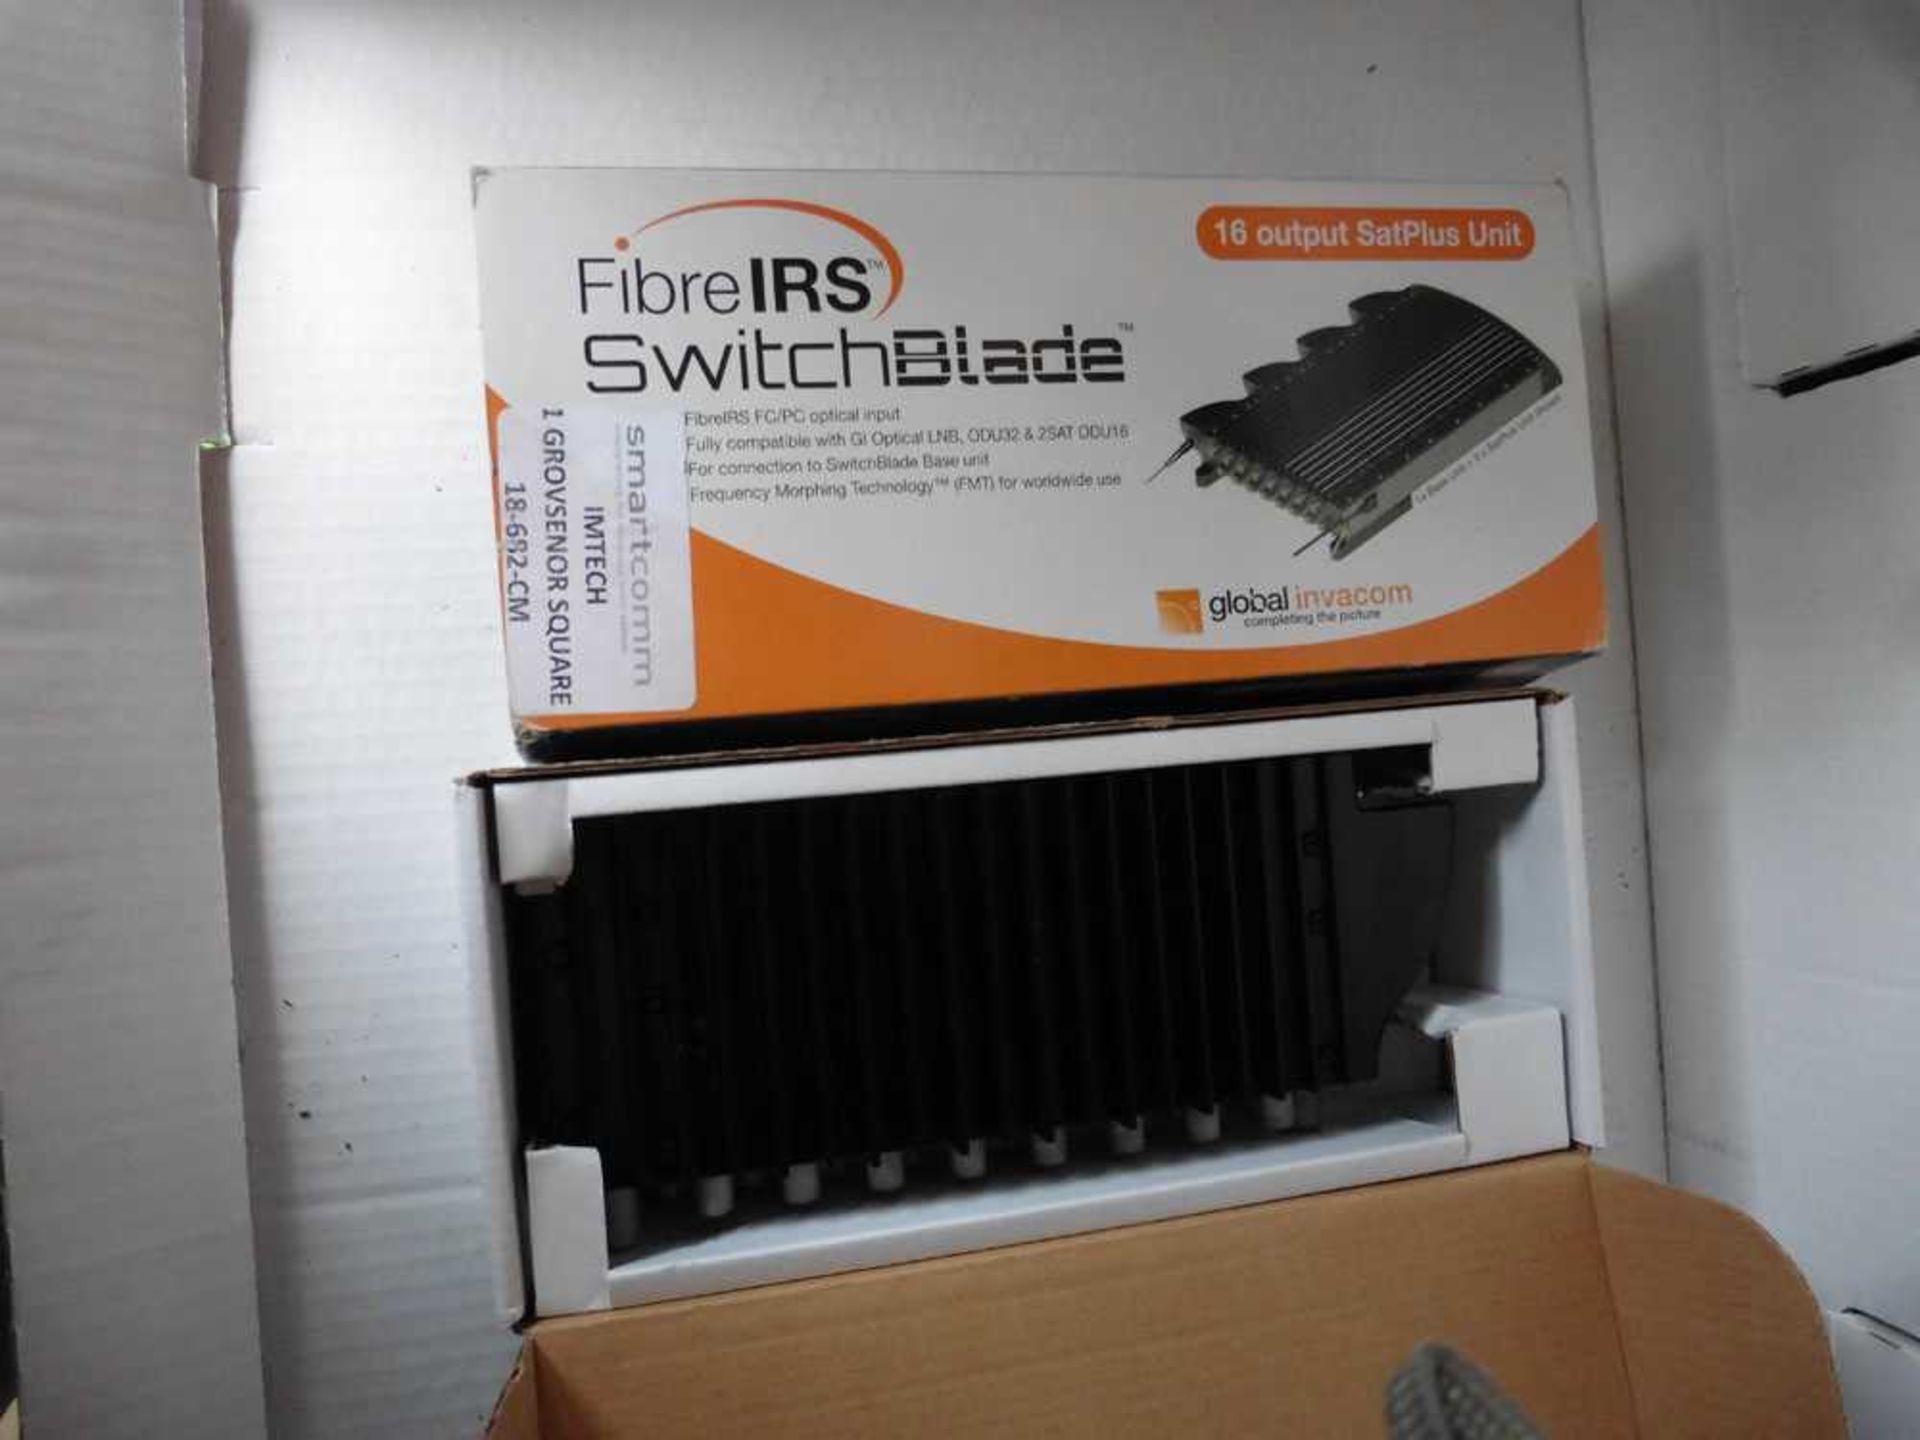 +VAT 2 x Global Invacom fibre IRS switch blade 8 output Sat Plus unit